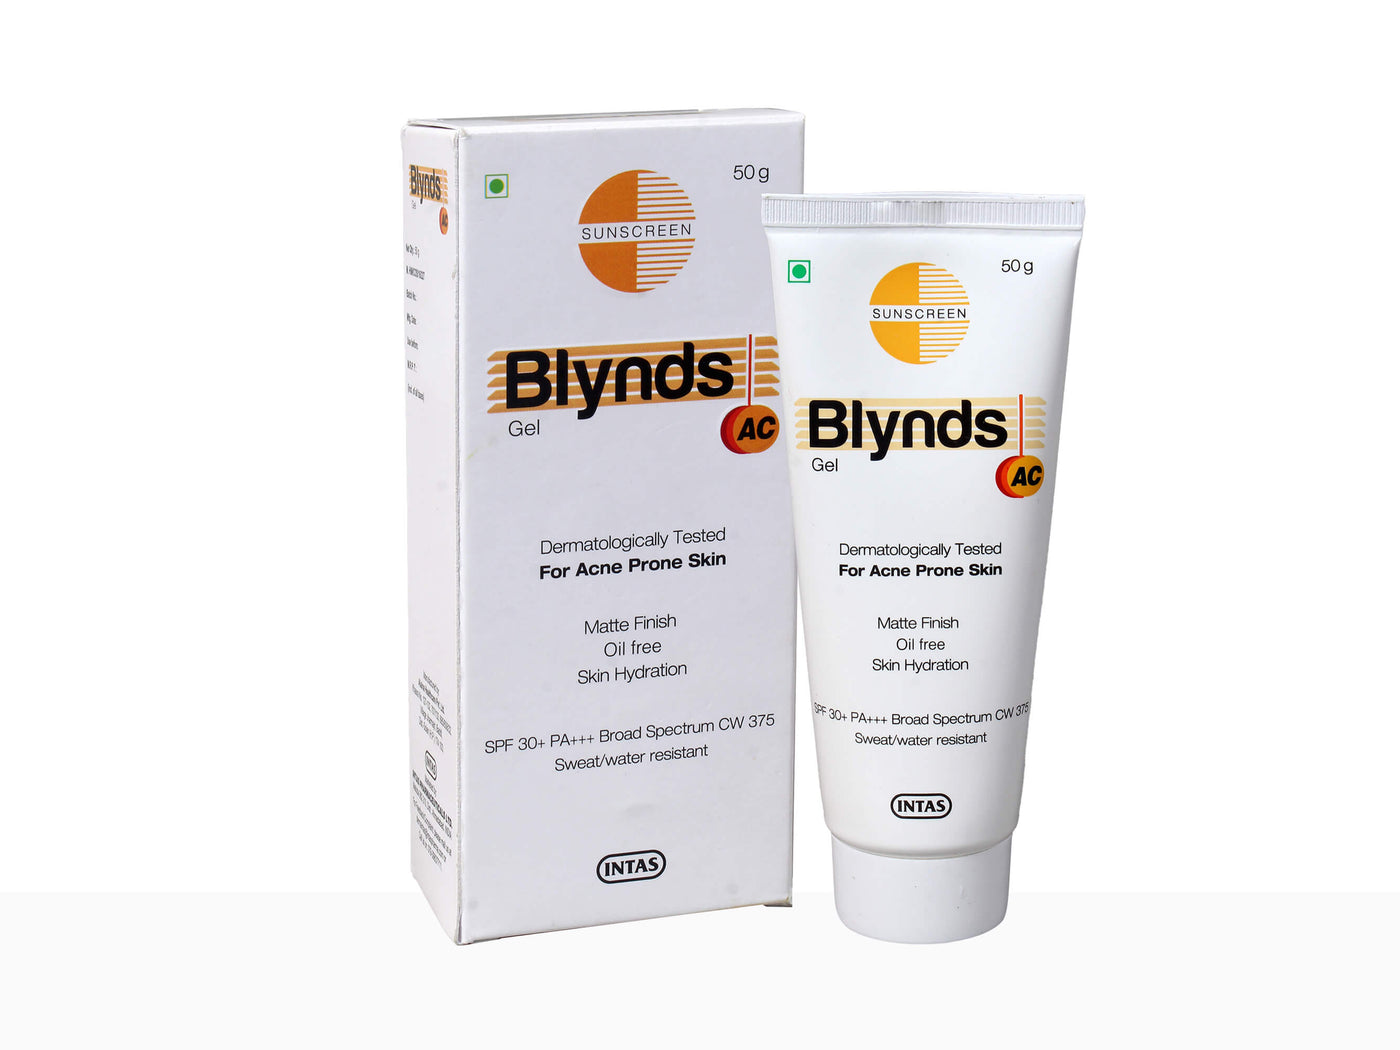 Blynds AC Sunscreen Gel - Clinikally